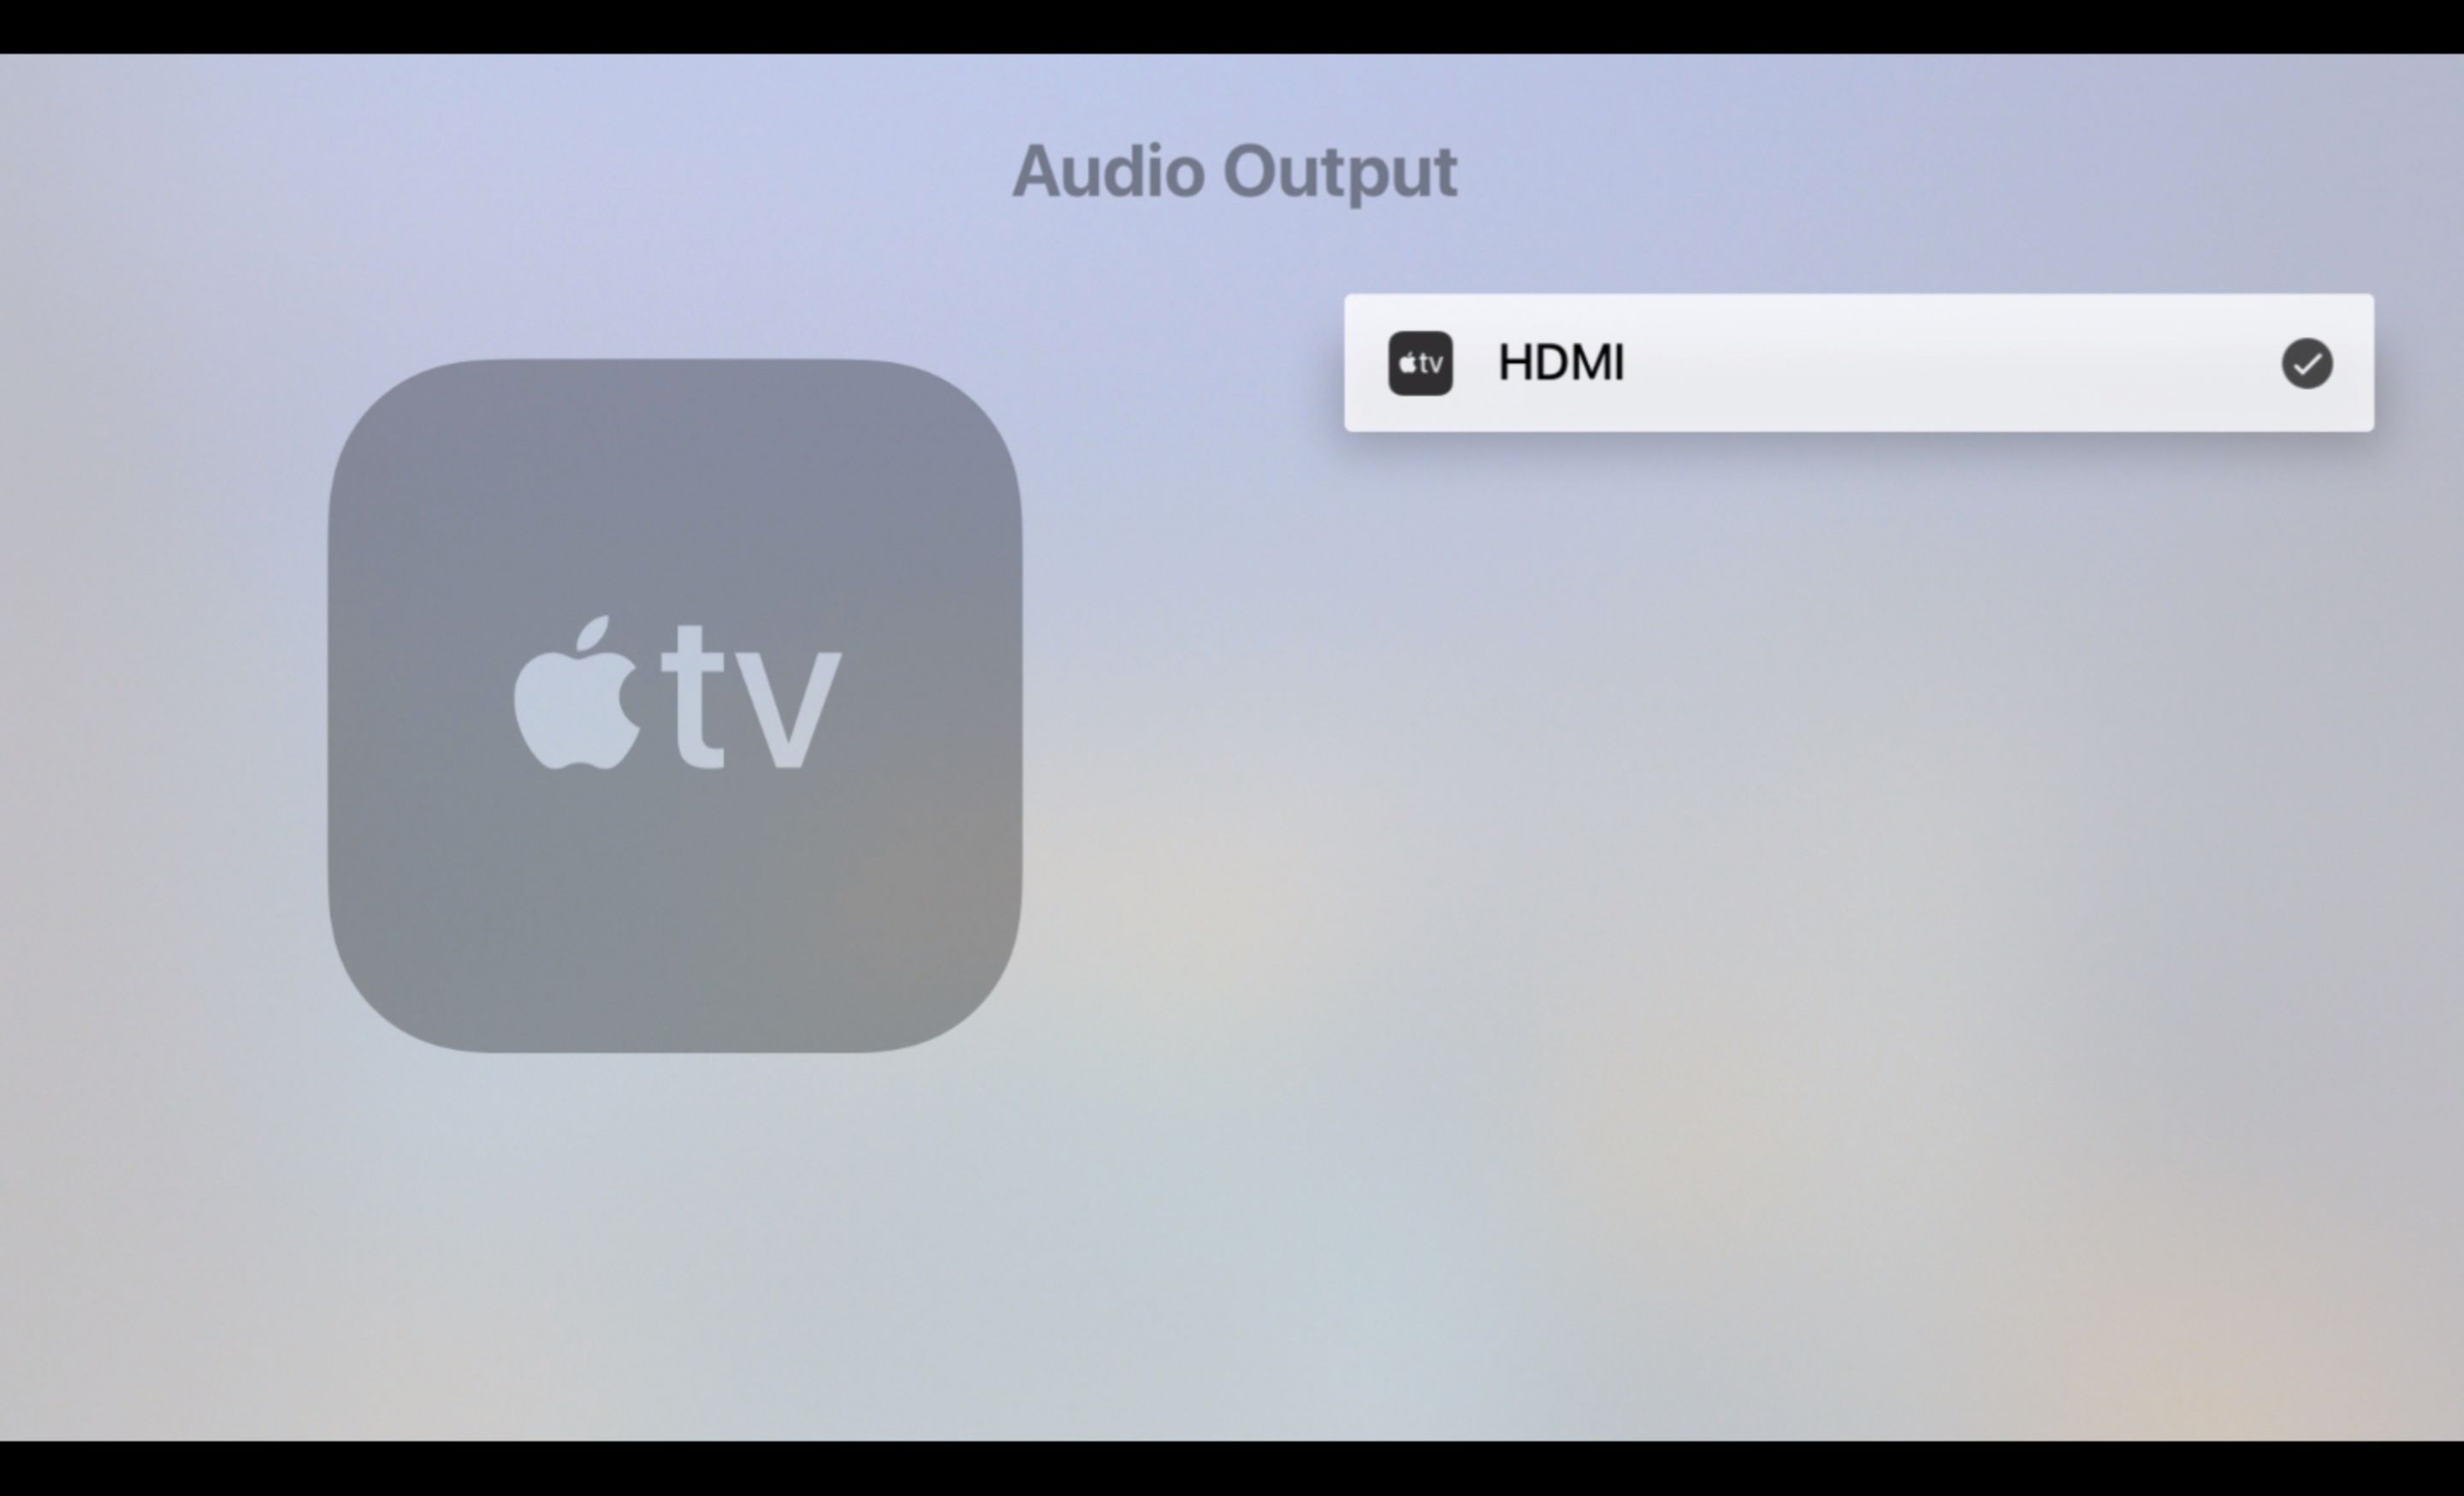 Ljudutgångsskärm på Apple TV, inställd på HDMI